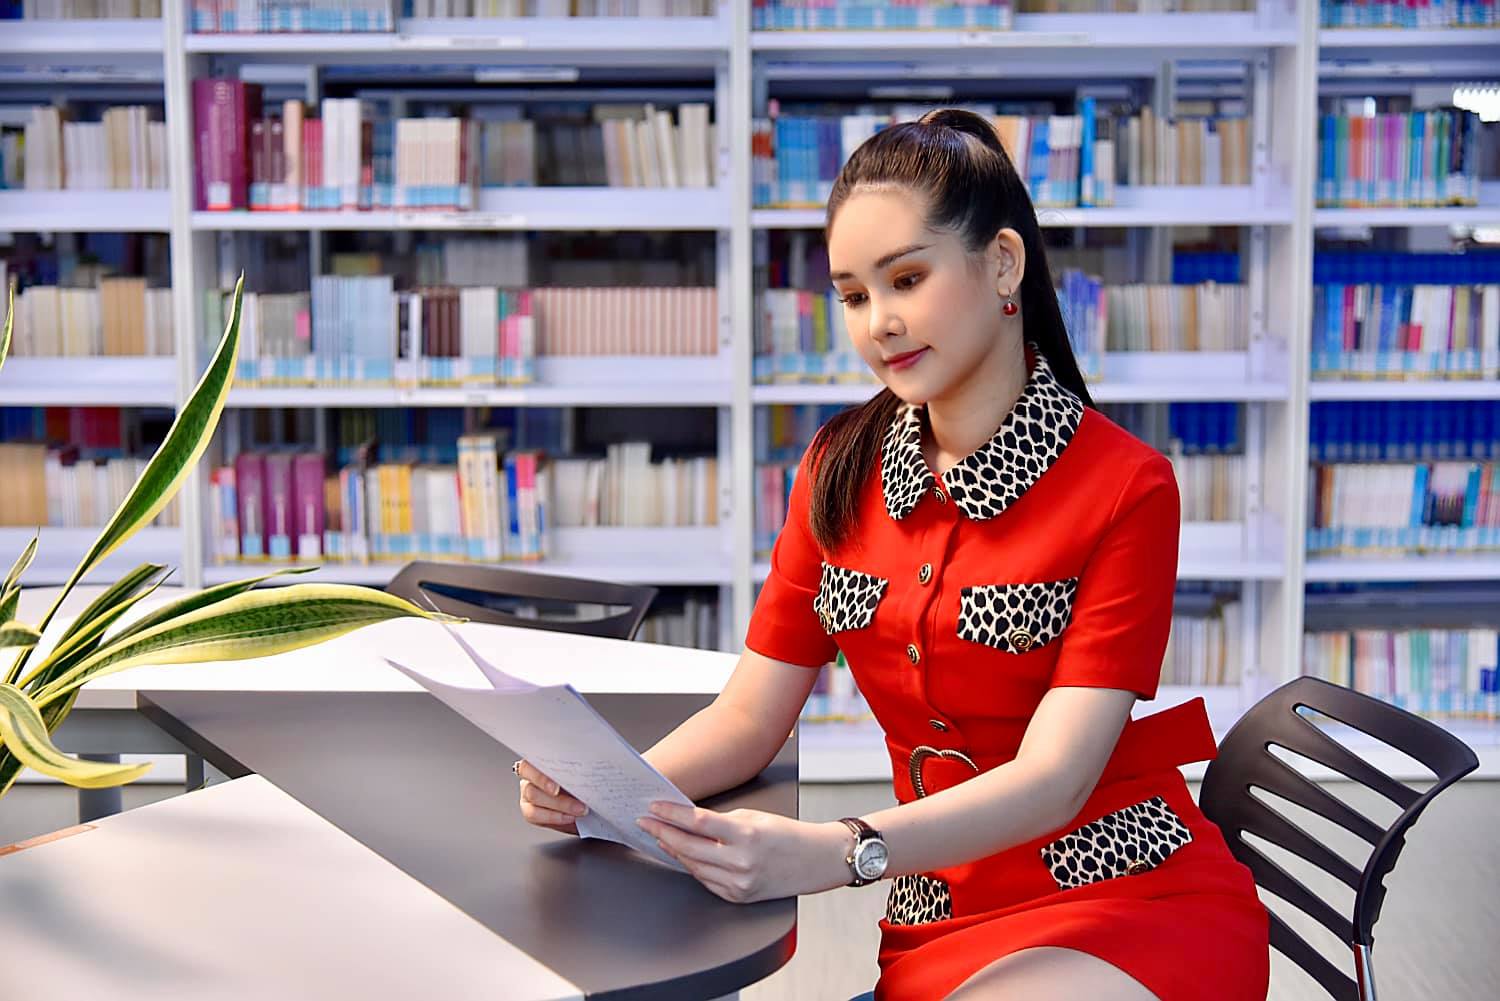 "Nữ giảng viên hot nhất showbiz Việt" quyến rũ với đồ hiệu phủ kín người - 3